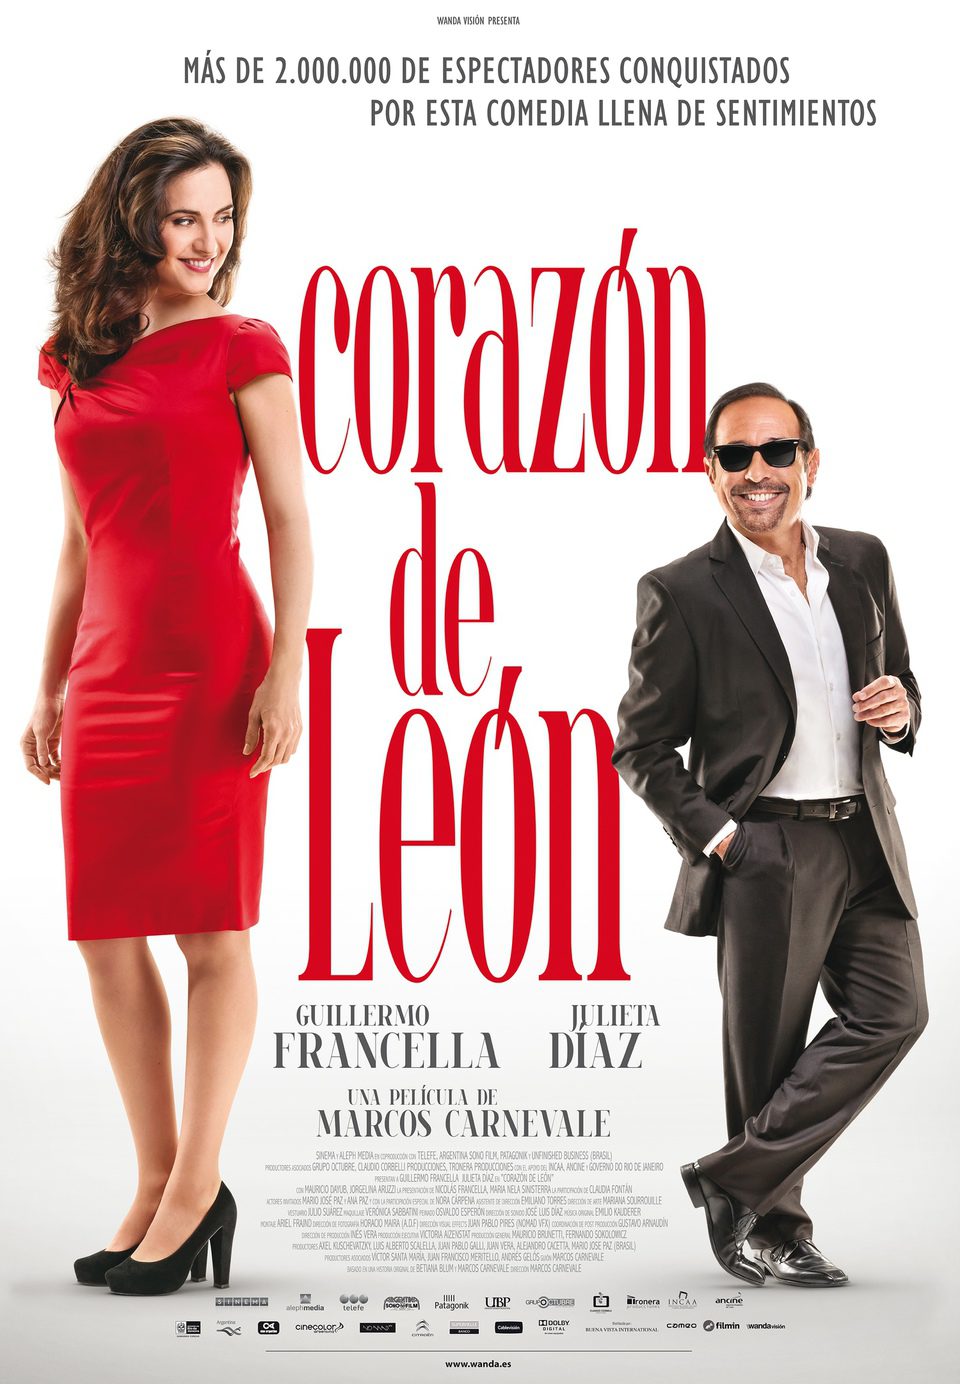 Cartel de Corazón de León - España